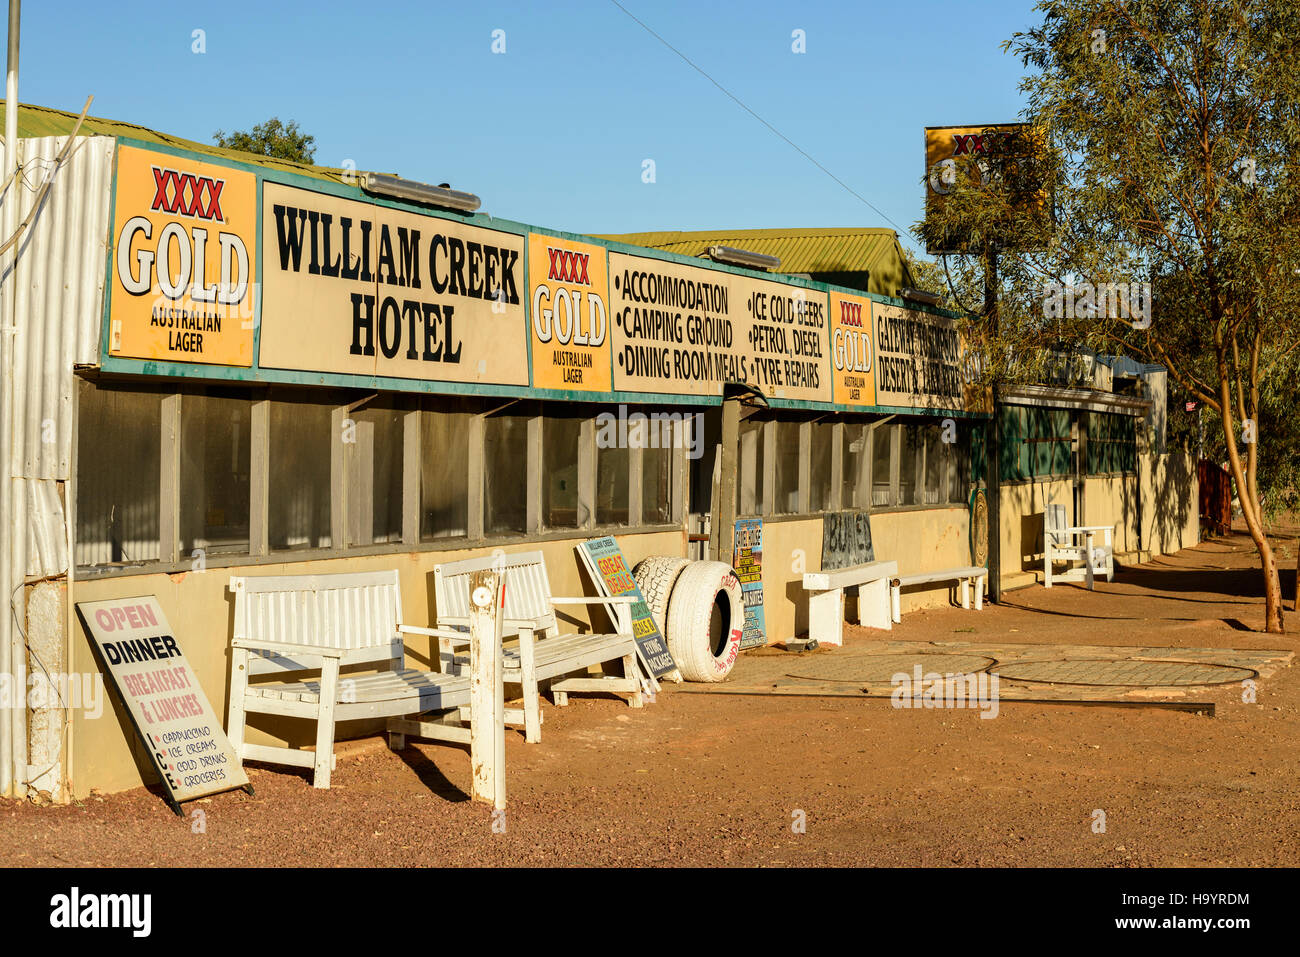 Das William Creek Hotel in der kleinsten Stadt Australiens, William Creek im Outback South Australia. Stockfoto